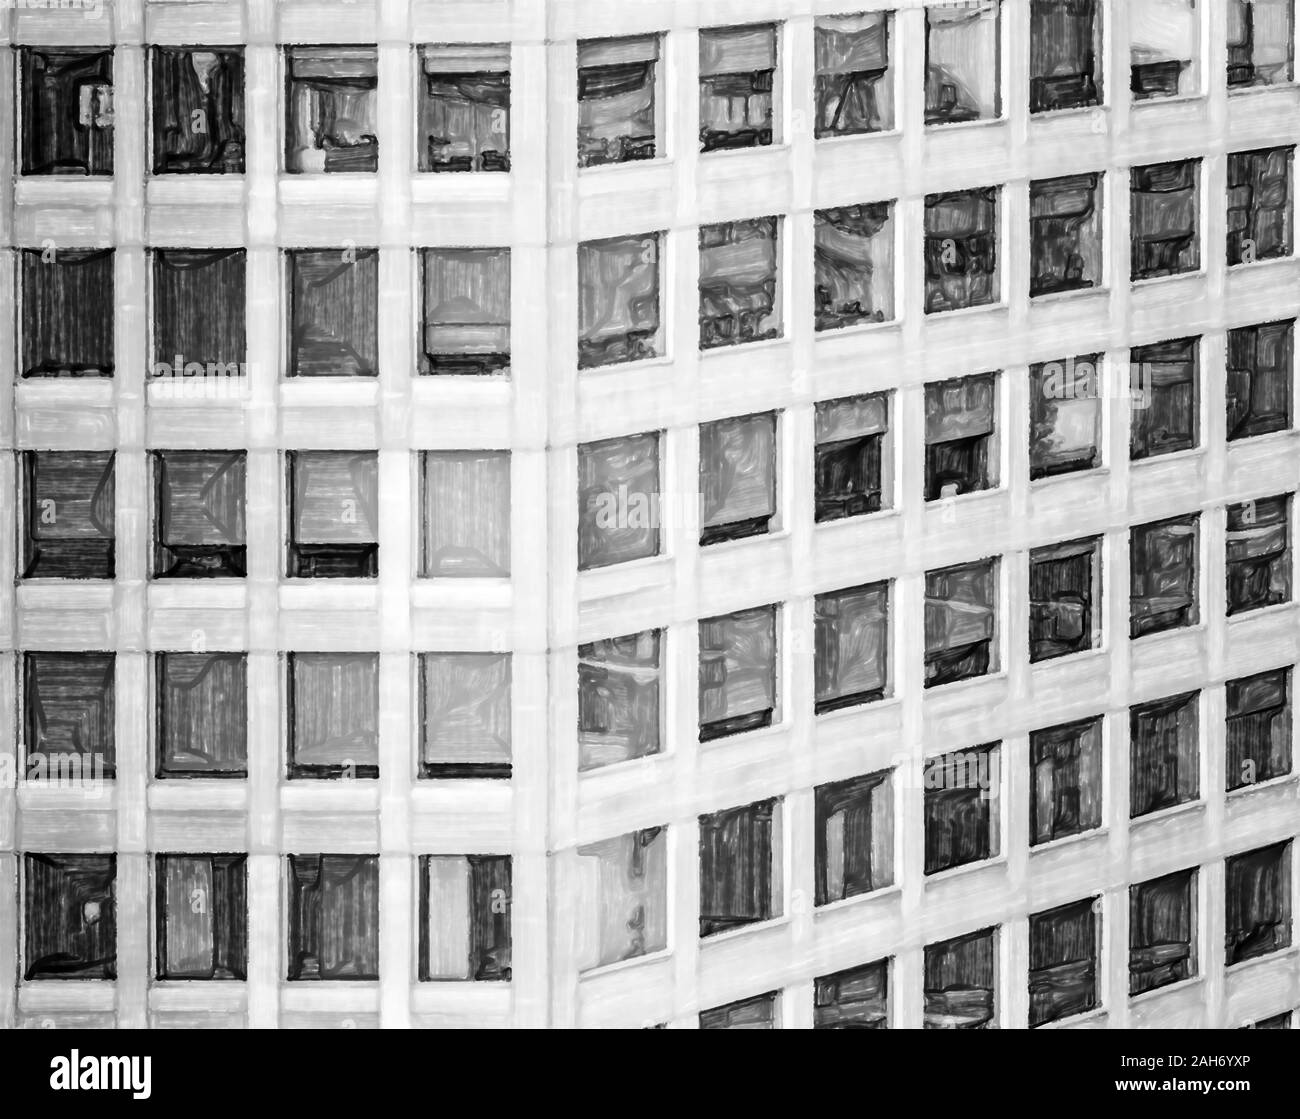 Acquerello immagine: riassunto in bianco e nero immagine sviluppata di un ufficio di alto-aumento con quasi finestre quadrate, architettura Foto Stock